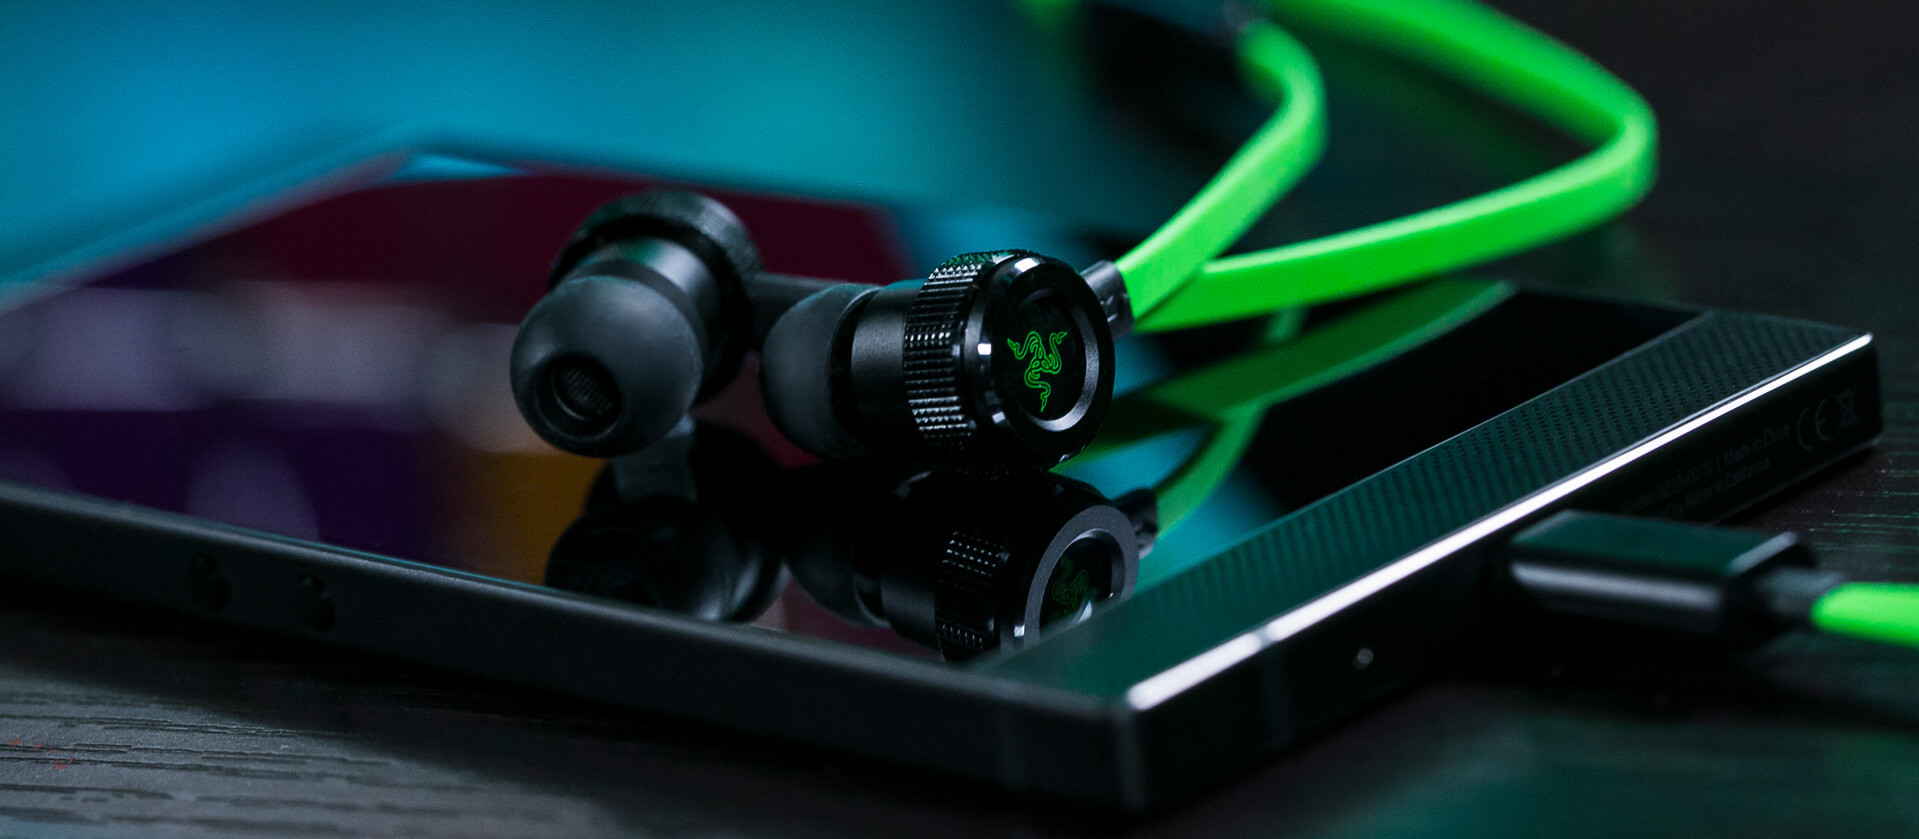 Razer Phone modelinin kulaklığı tanıtıldı!